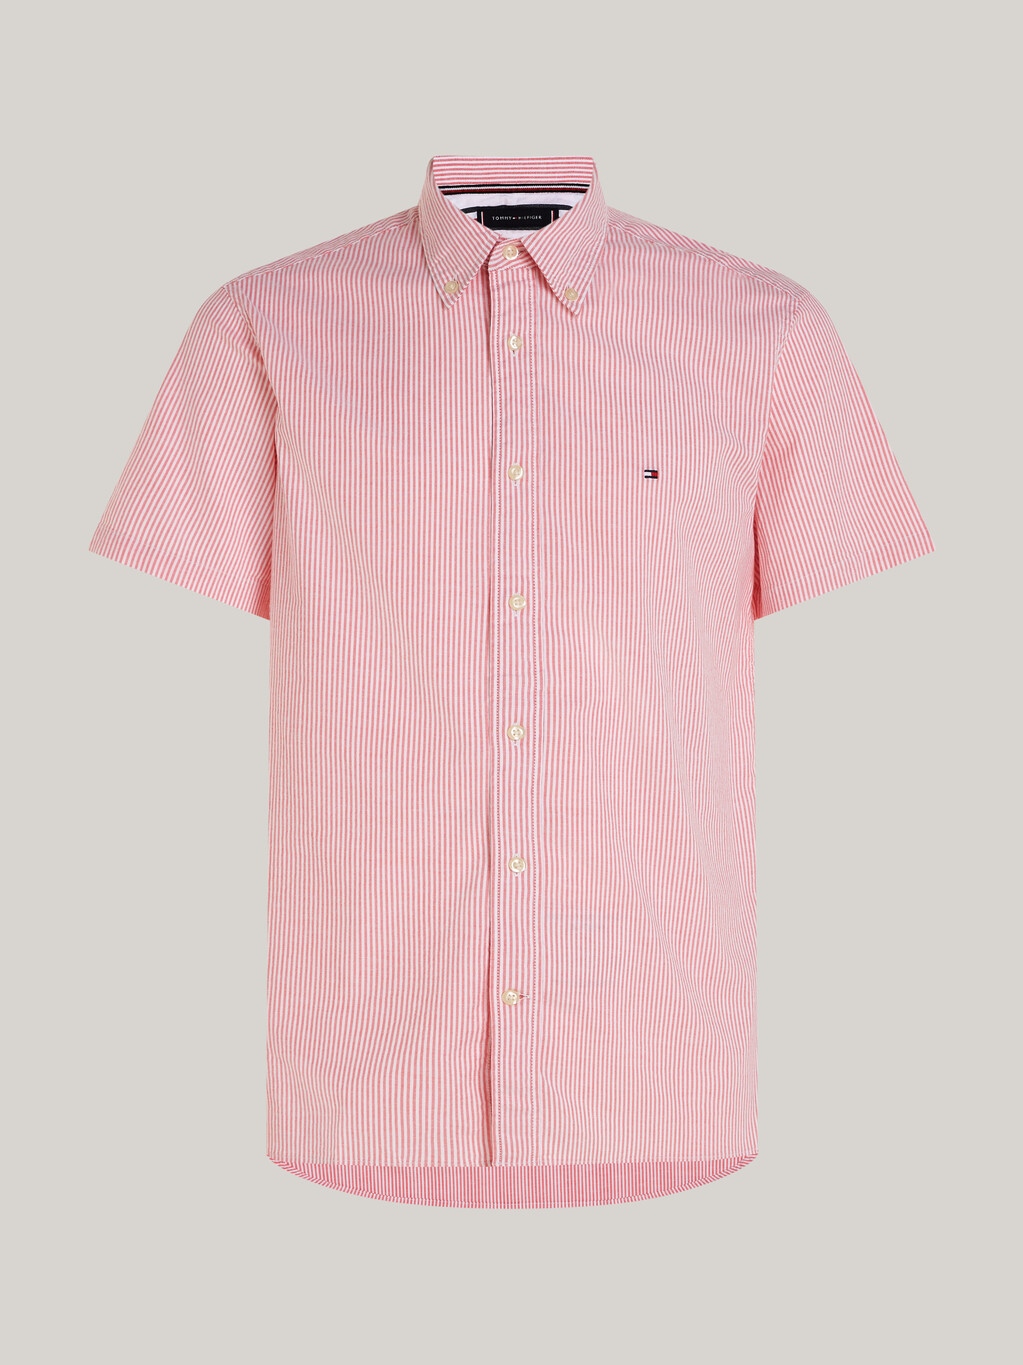 旗幟條紋短袖恤衫, Laser Pink / Optic White, hi-res